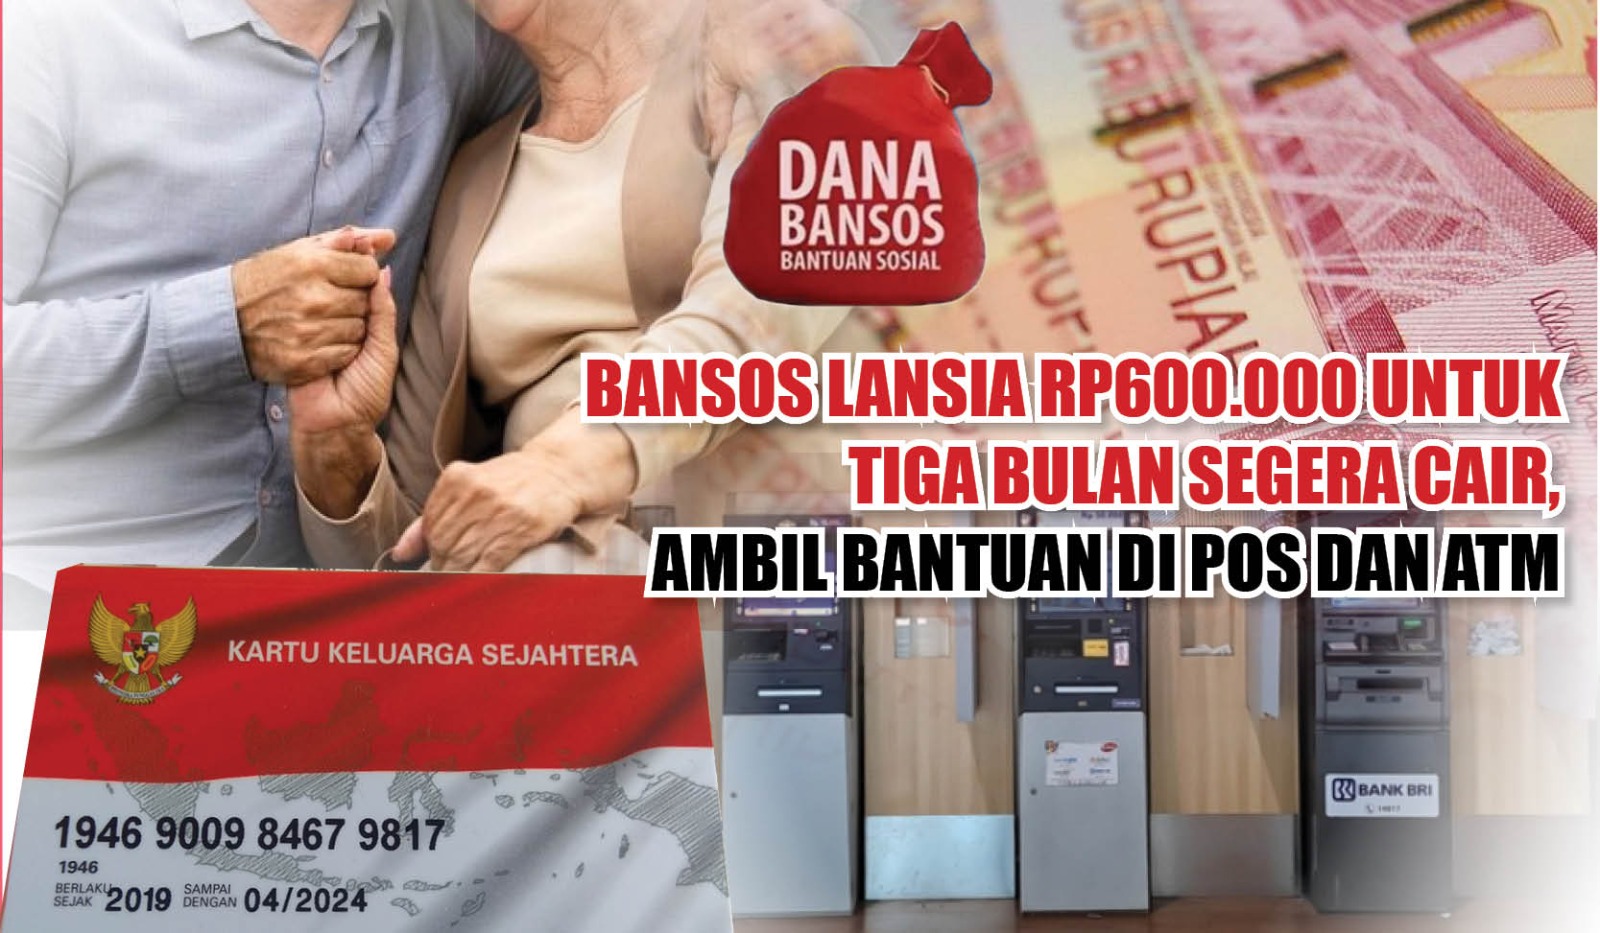 Bansos Lansia Rp600.000 untuk Tiga Bulan Segera Cair, Ambil Bantuan di Pos dan ATM